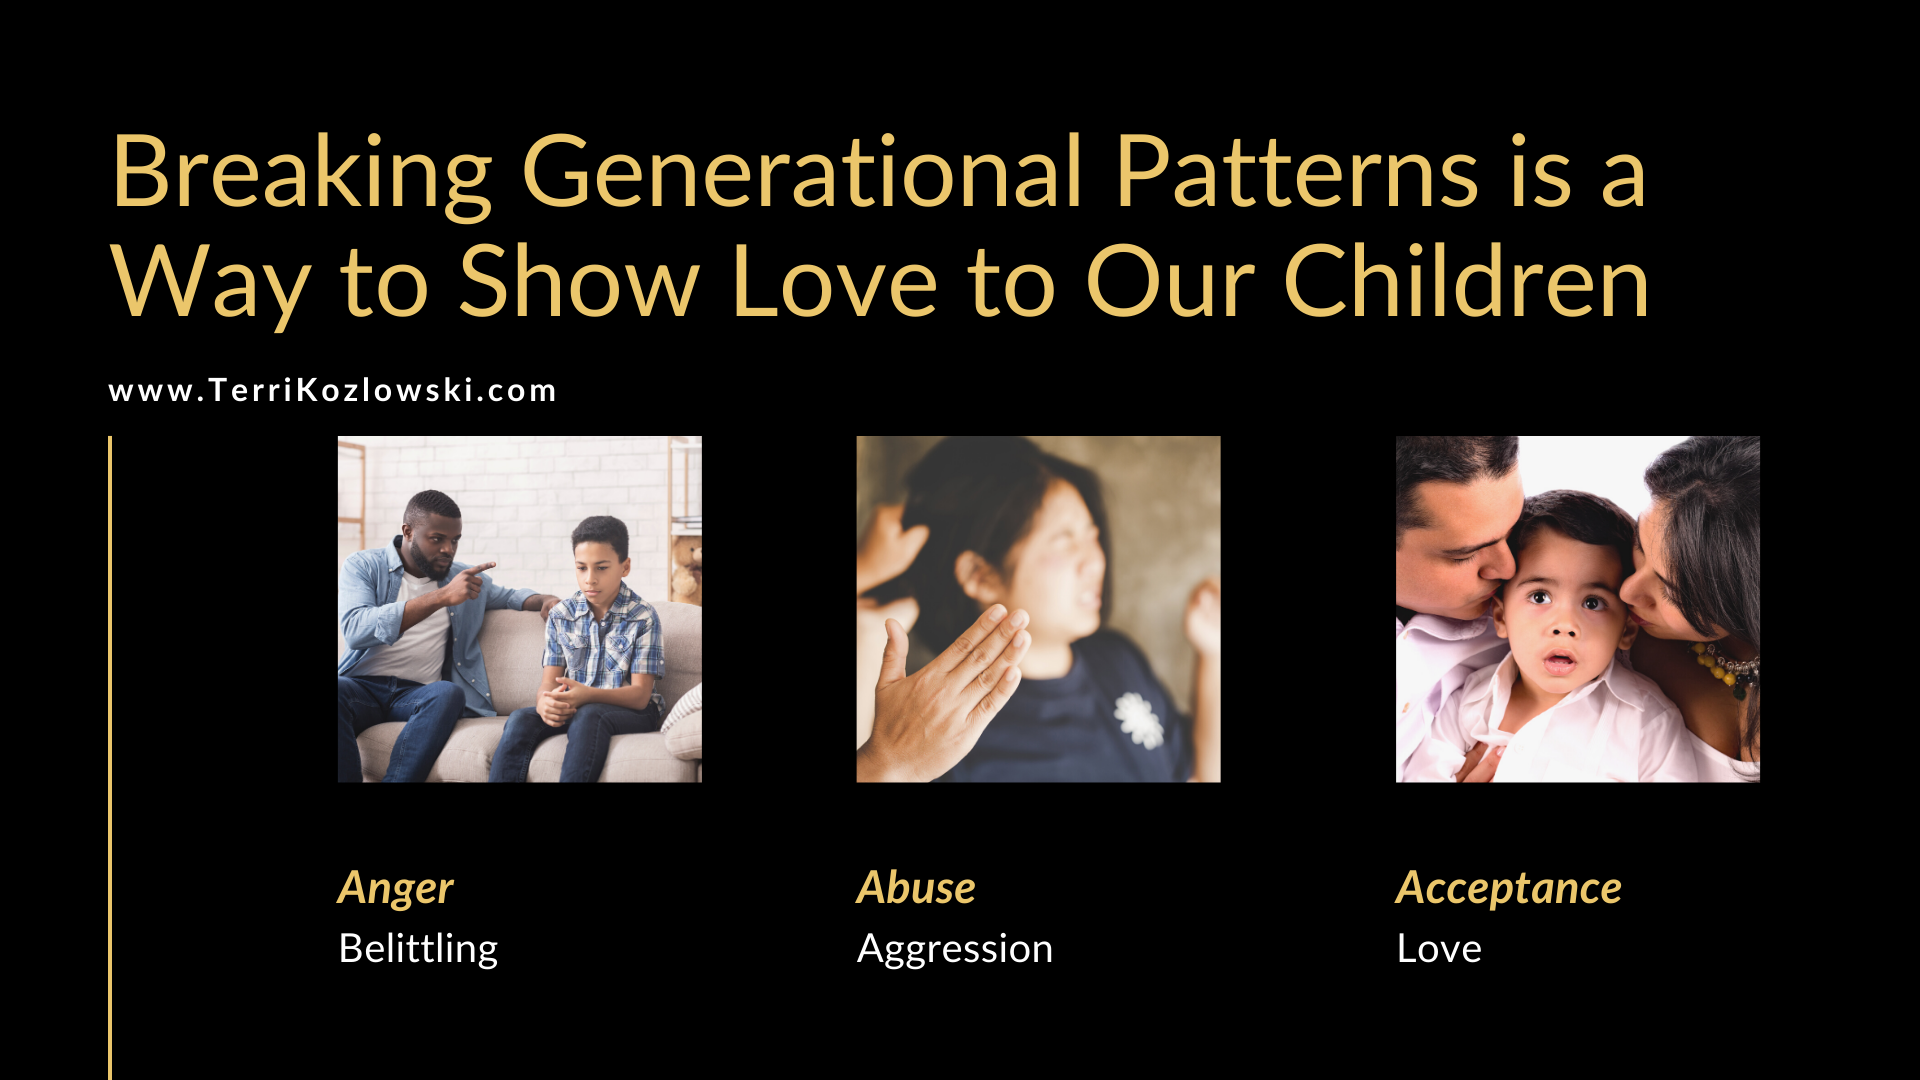 Family Patterns of Behavior